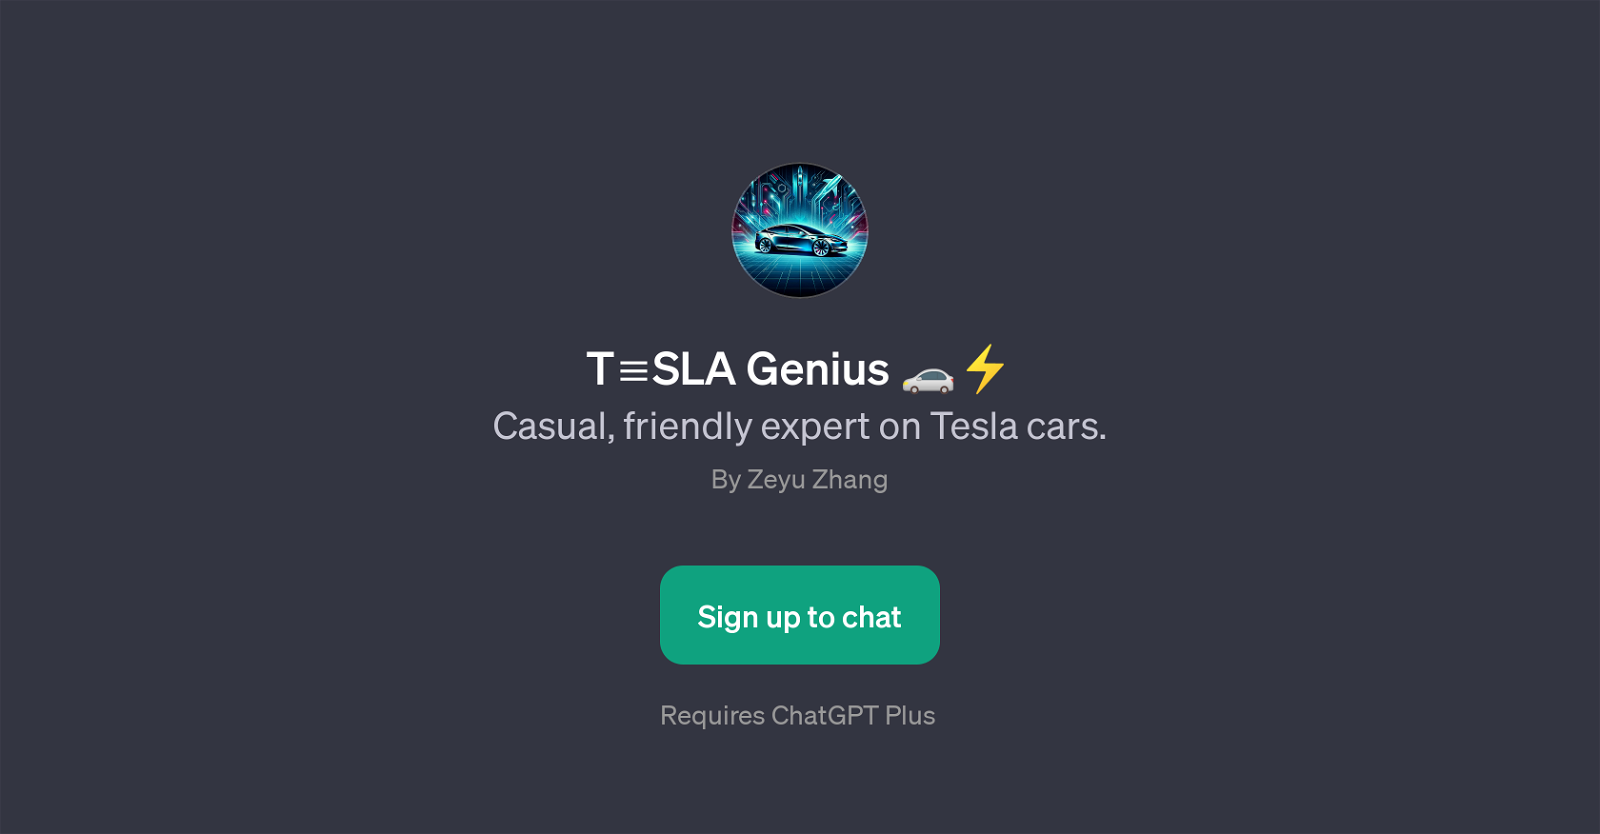 TSLA Genius website